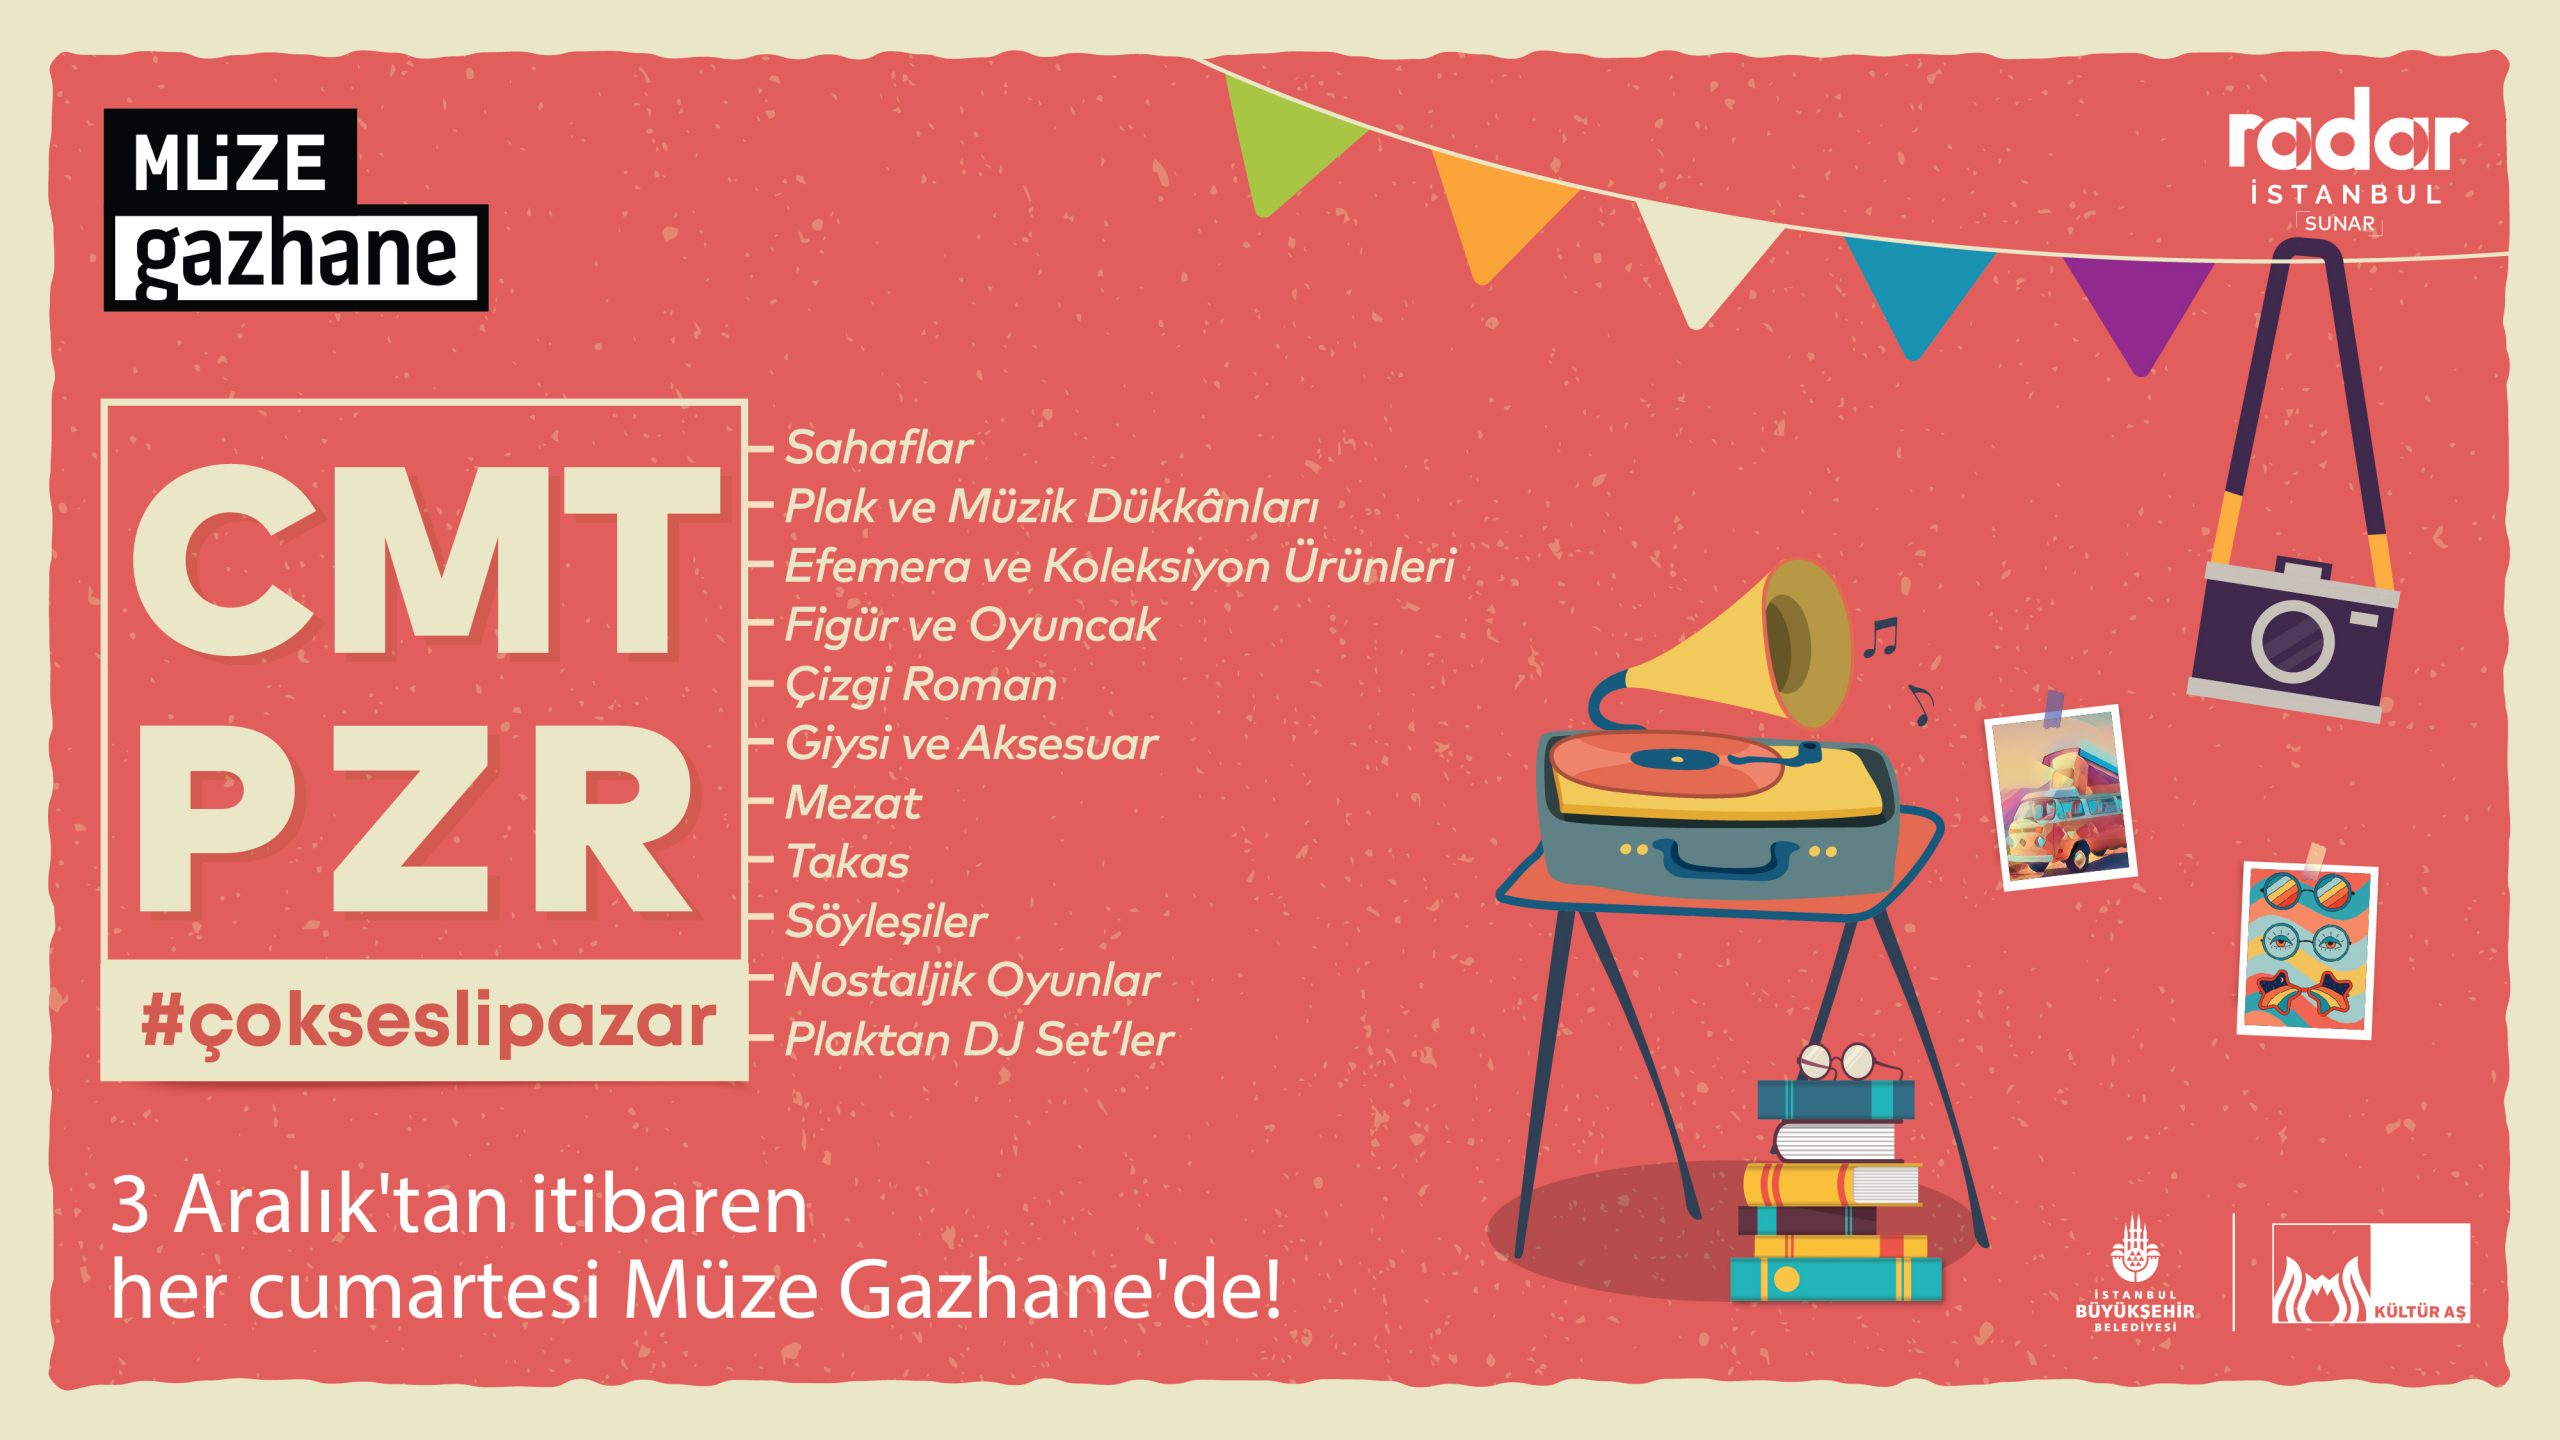 CMTPZR #çokseslipazar 3 Aralık’ta Müze Gazhane’de başlıyor!